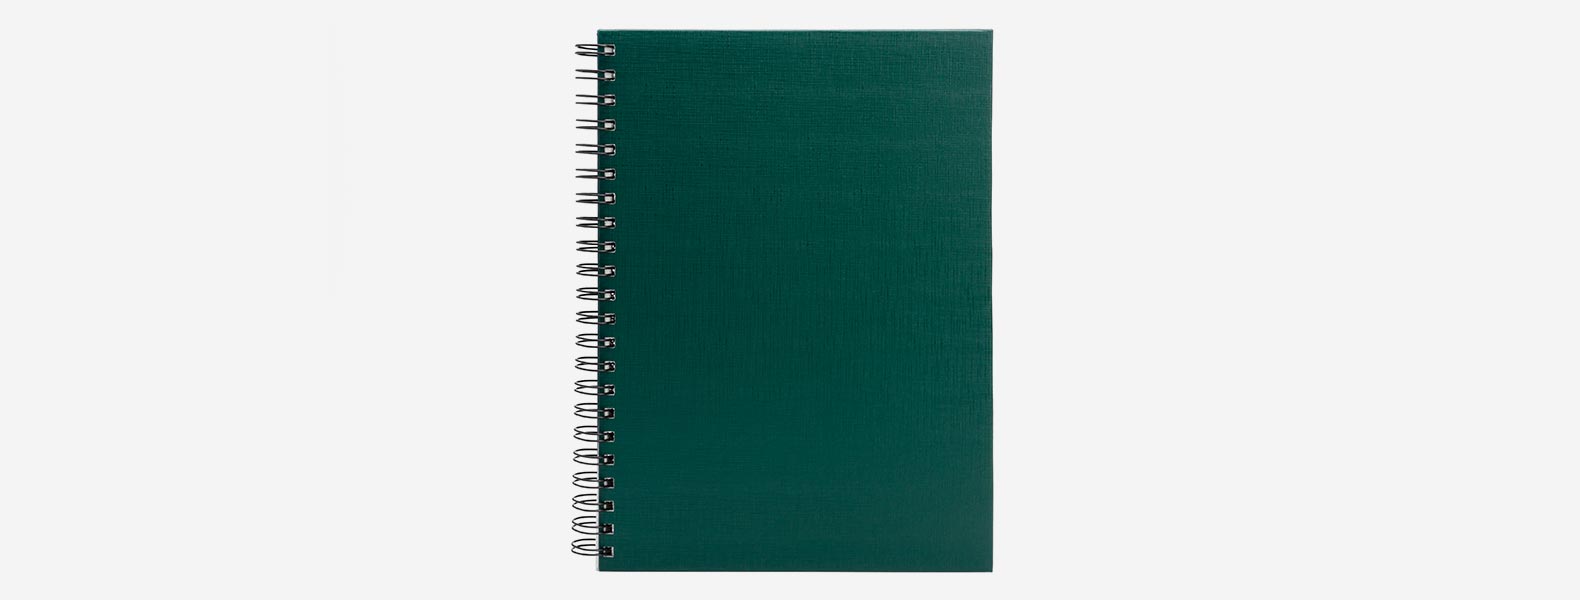 Caderno para anotações wire-o verde com capa dura revestida em percalux linho. Conta com folha para dados pessoais, calendário e 100 folhas pautadas. Gramatura da folha de 70 g/m2.